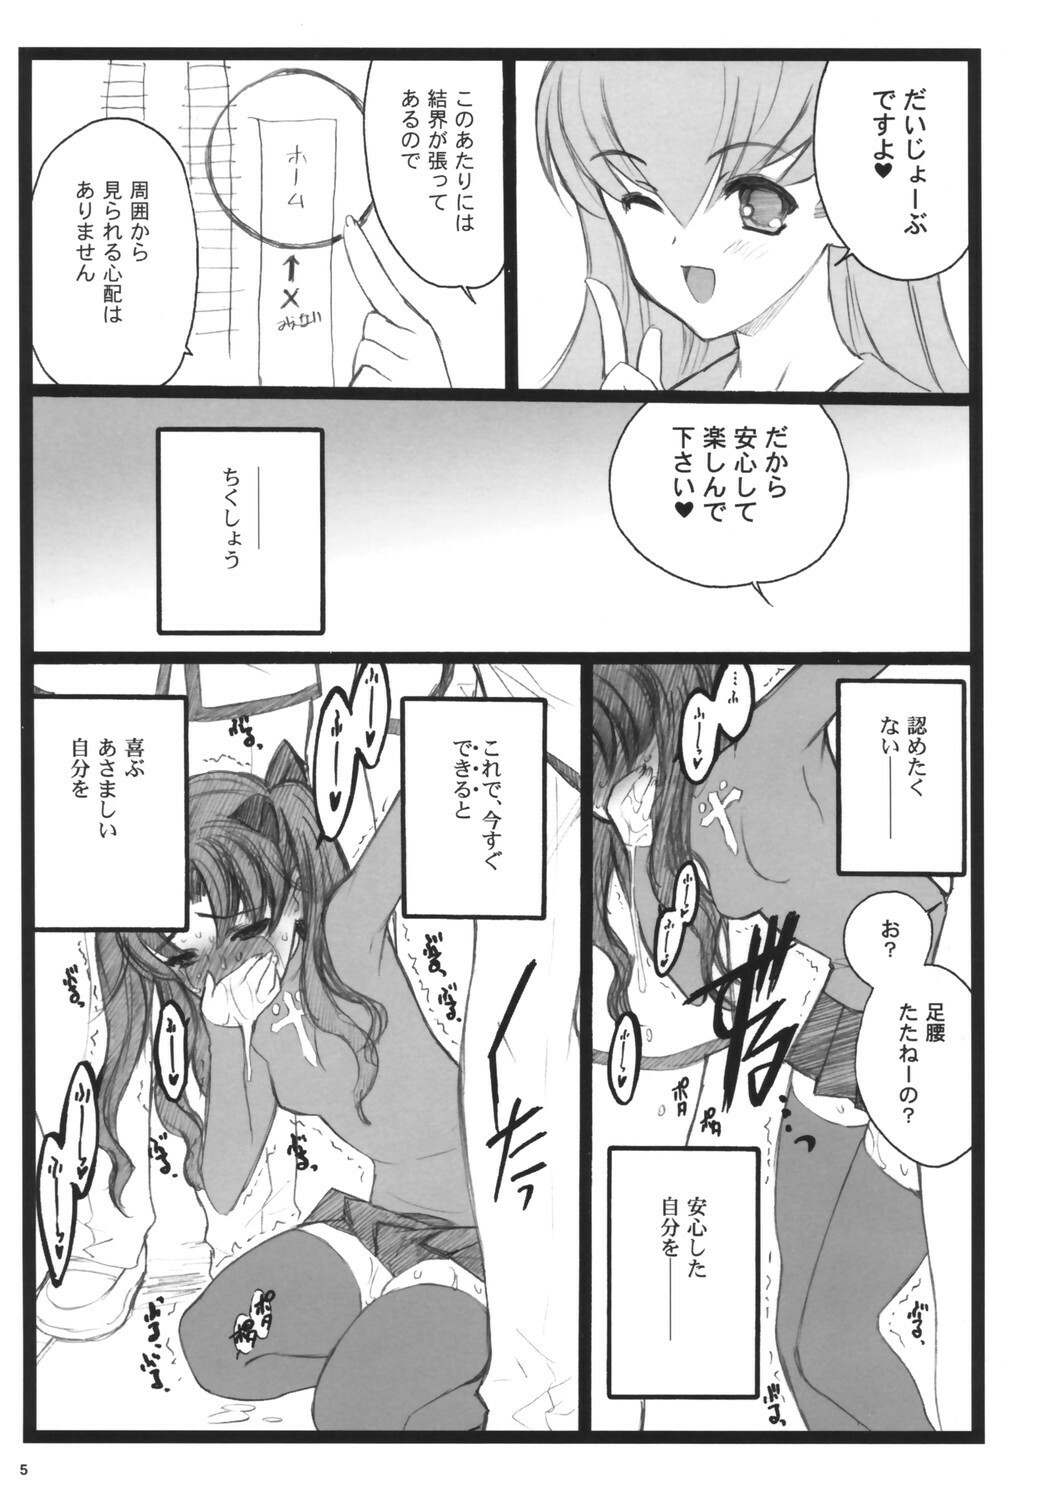 (C71)[Keumaya (Inoue Junichi)] Walpurugisnacht 3 (Fate/stay night) page 4 full